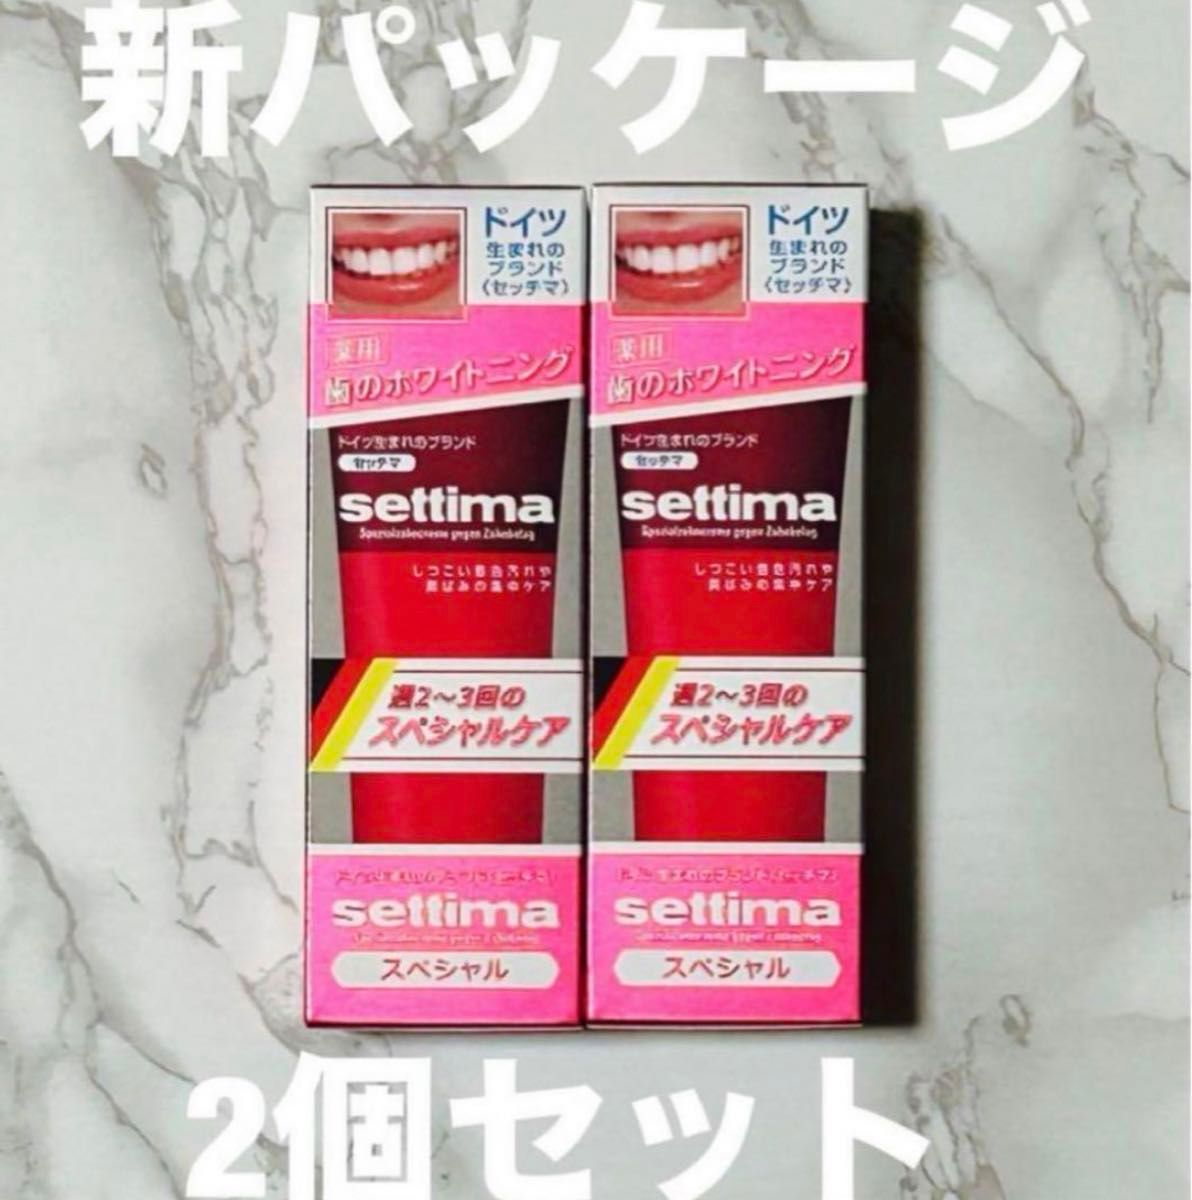 settima（セッチマ）スペシャル ホワイトニング ハミガキ粉 80g×2個